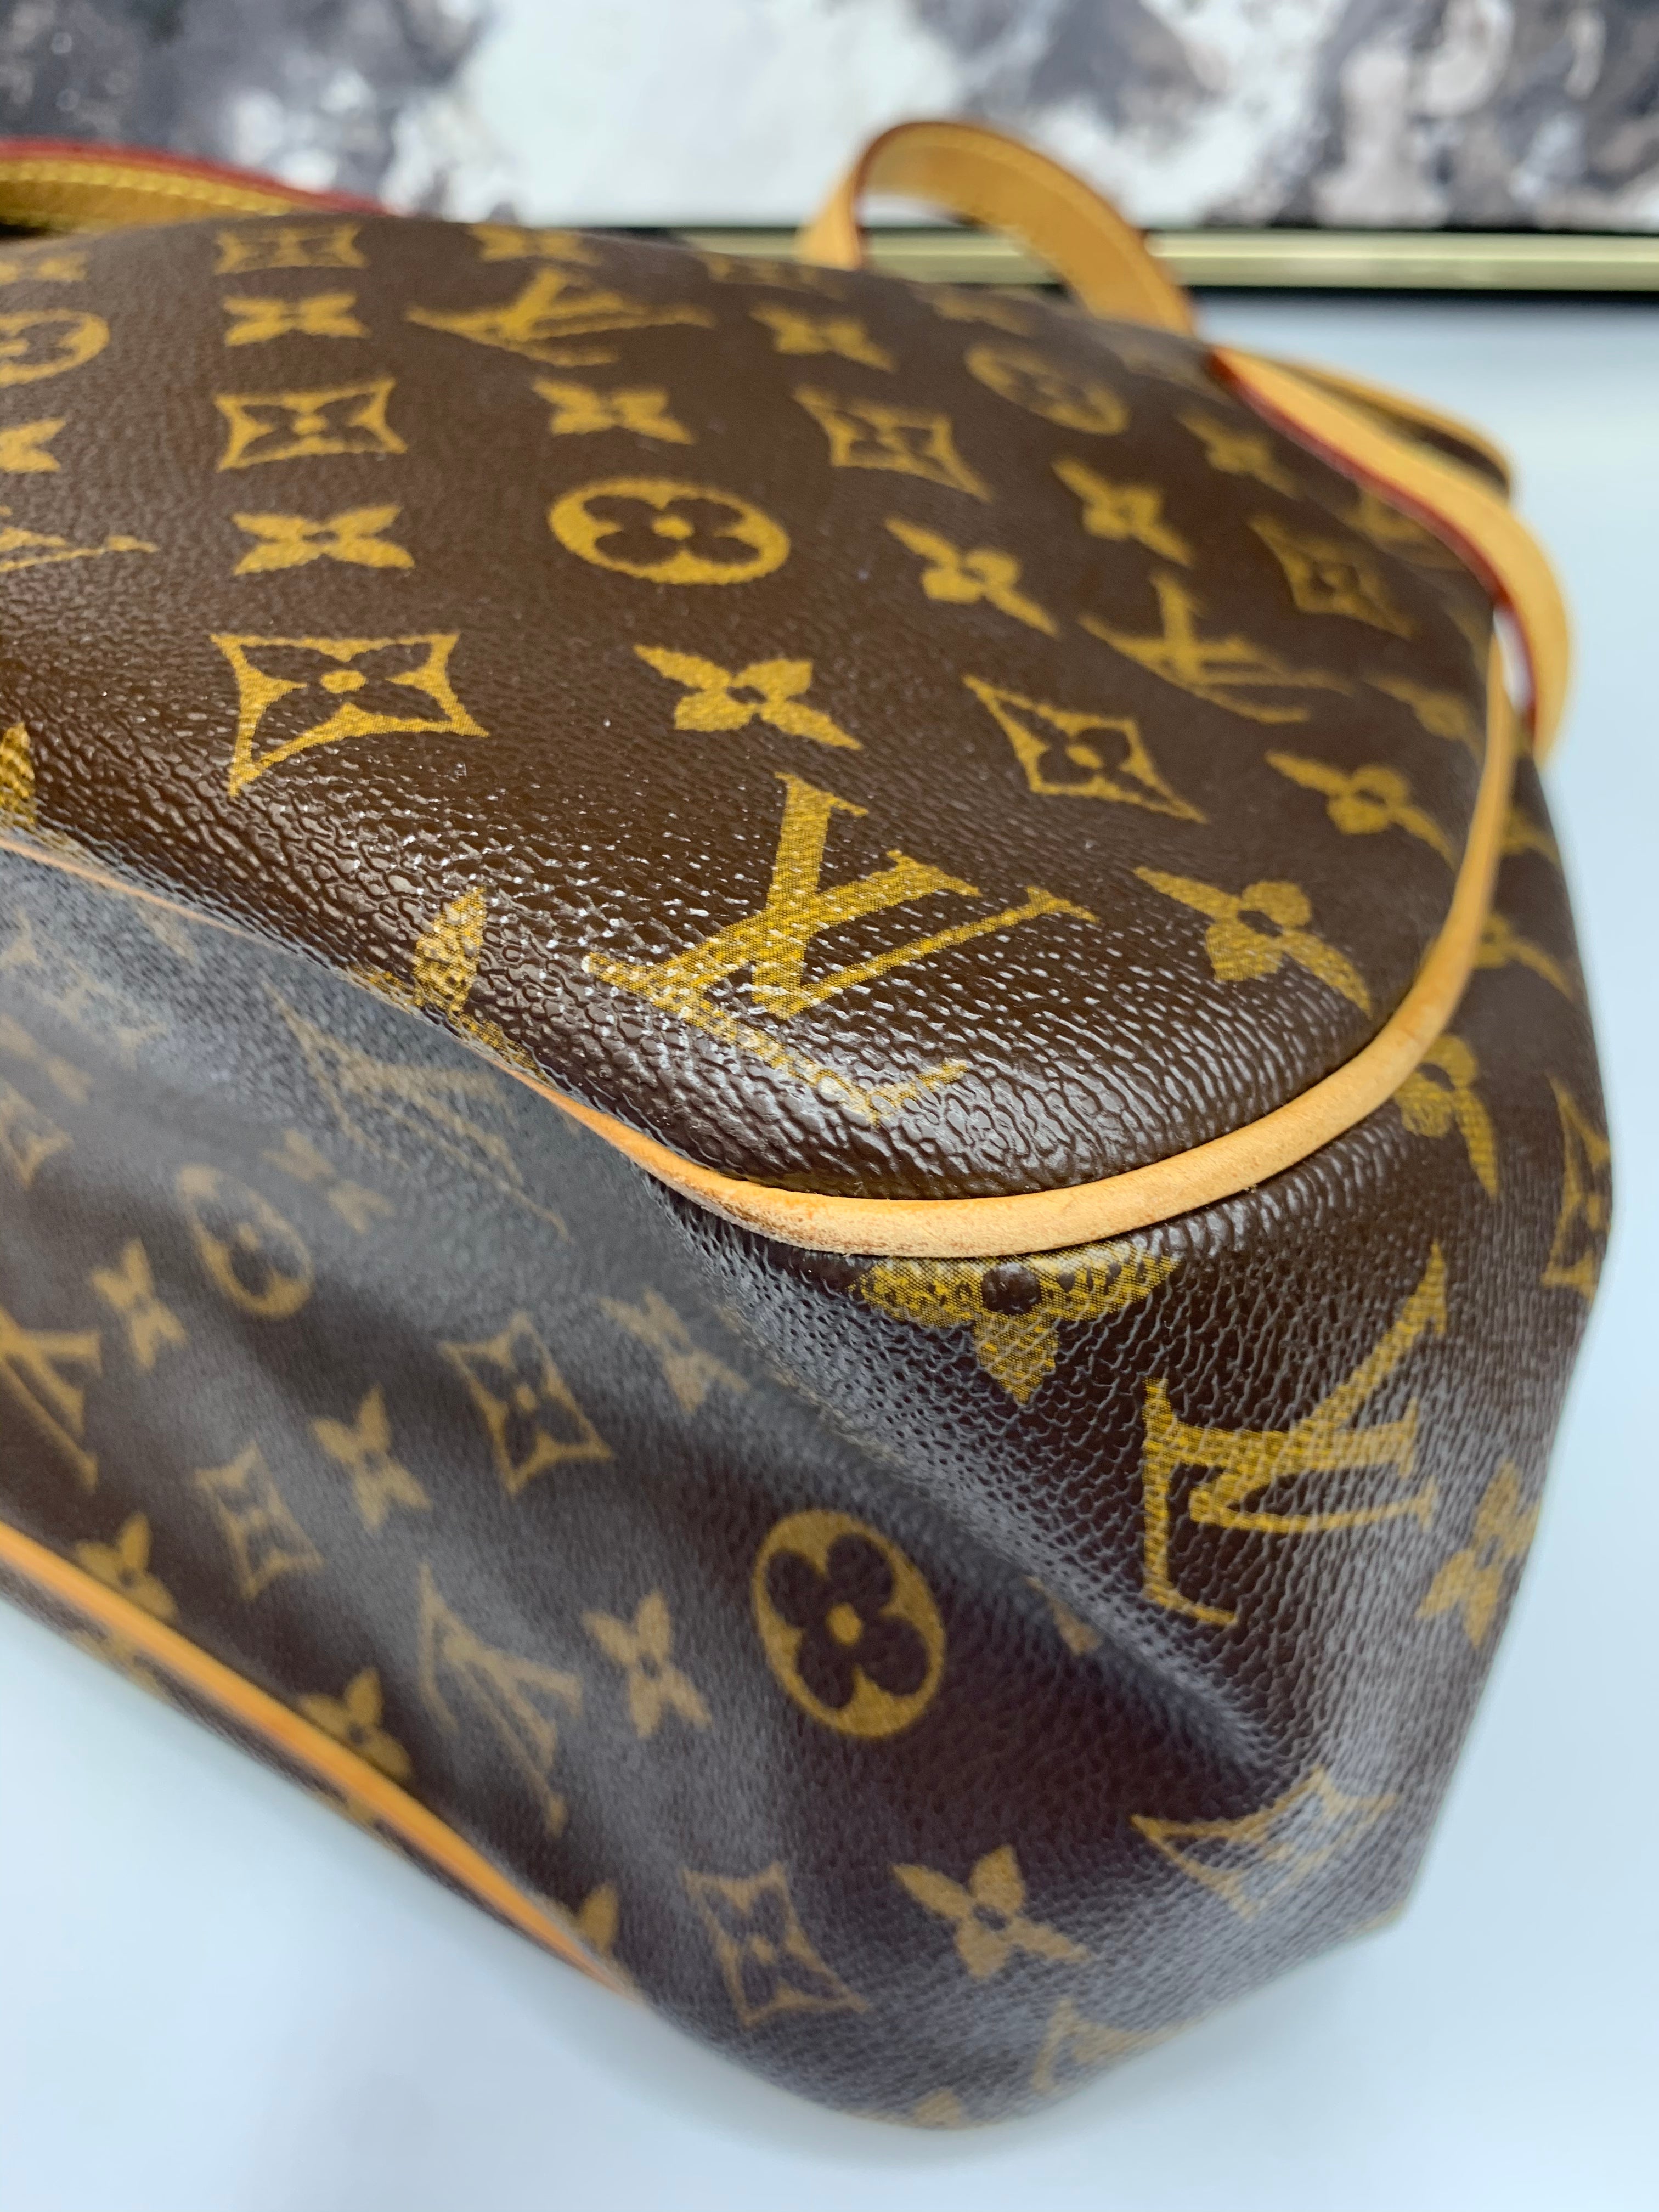 Louis Vuitton Monogram Batignolles Horizontal Shoulder Bag Medium Tote –  Gaby's Bags